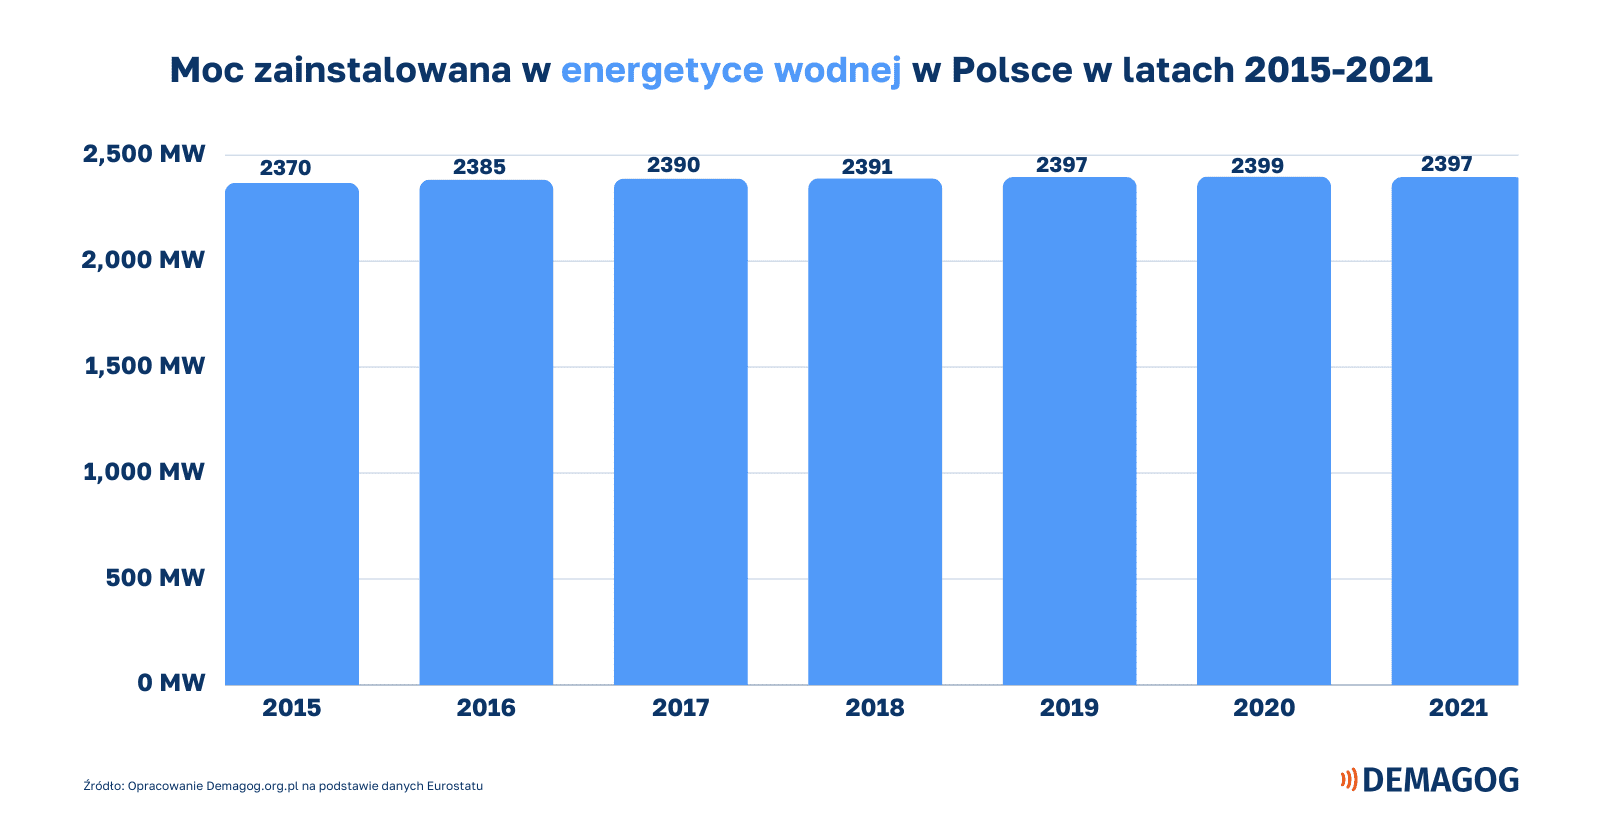 wykres słupkowy o mocy zainstalowanej w energii wodnej w Polsce w latach 2015-2021